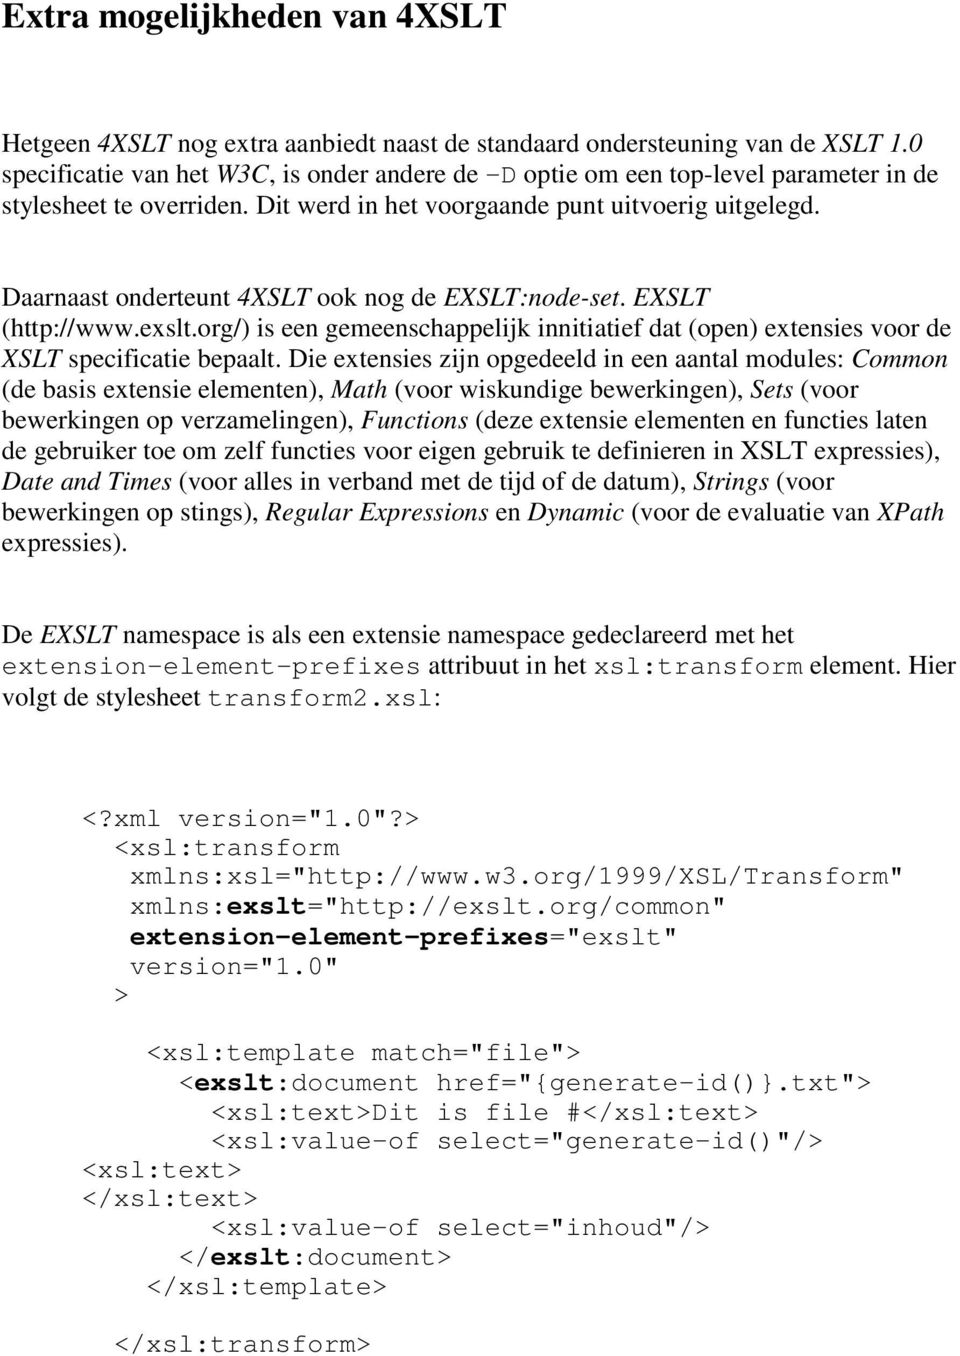 Daarnaast onderteunt 4XSLT ook nog de EXSLT:node-set. EXSLT (http://www.exslt.org/) is een gemeenschappelijk innitiatief dat (open) extensies voor de XSLT specificatie bepaalt.